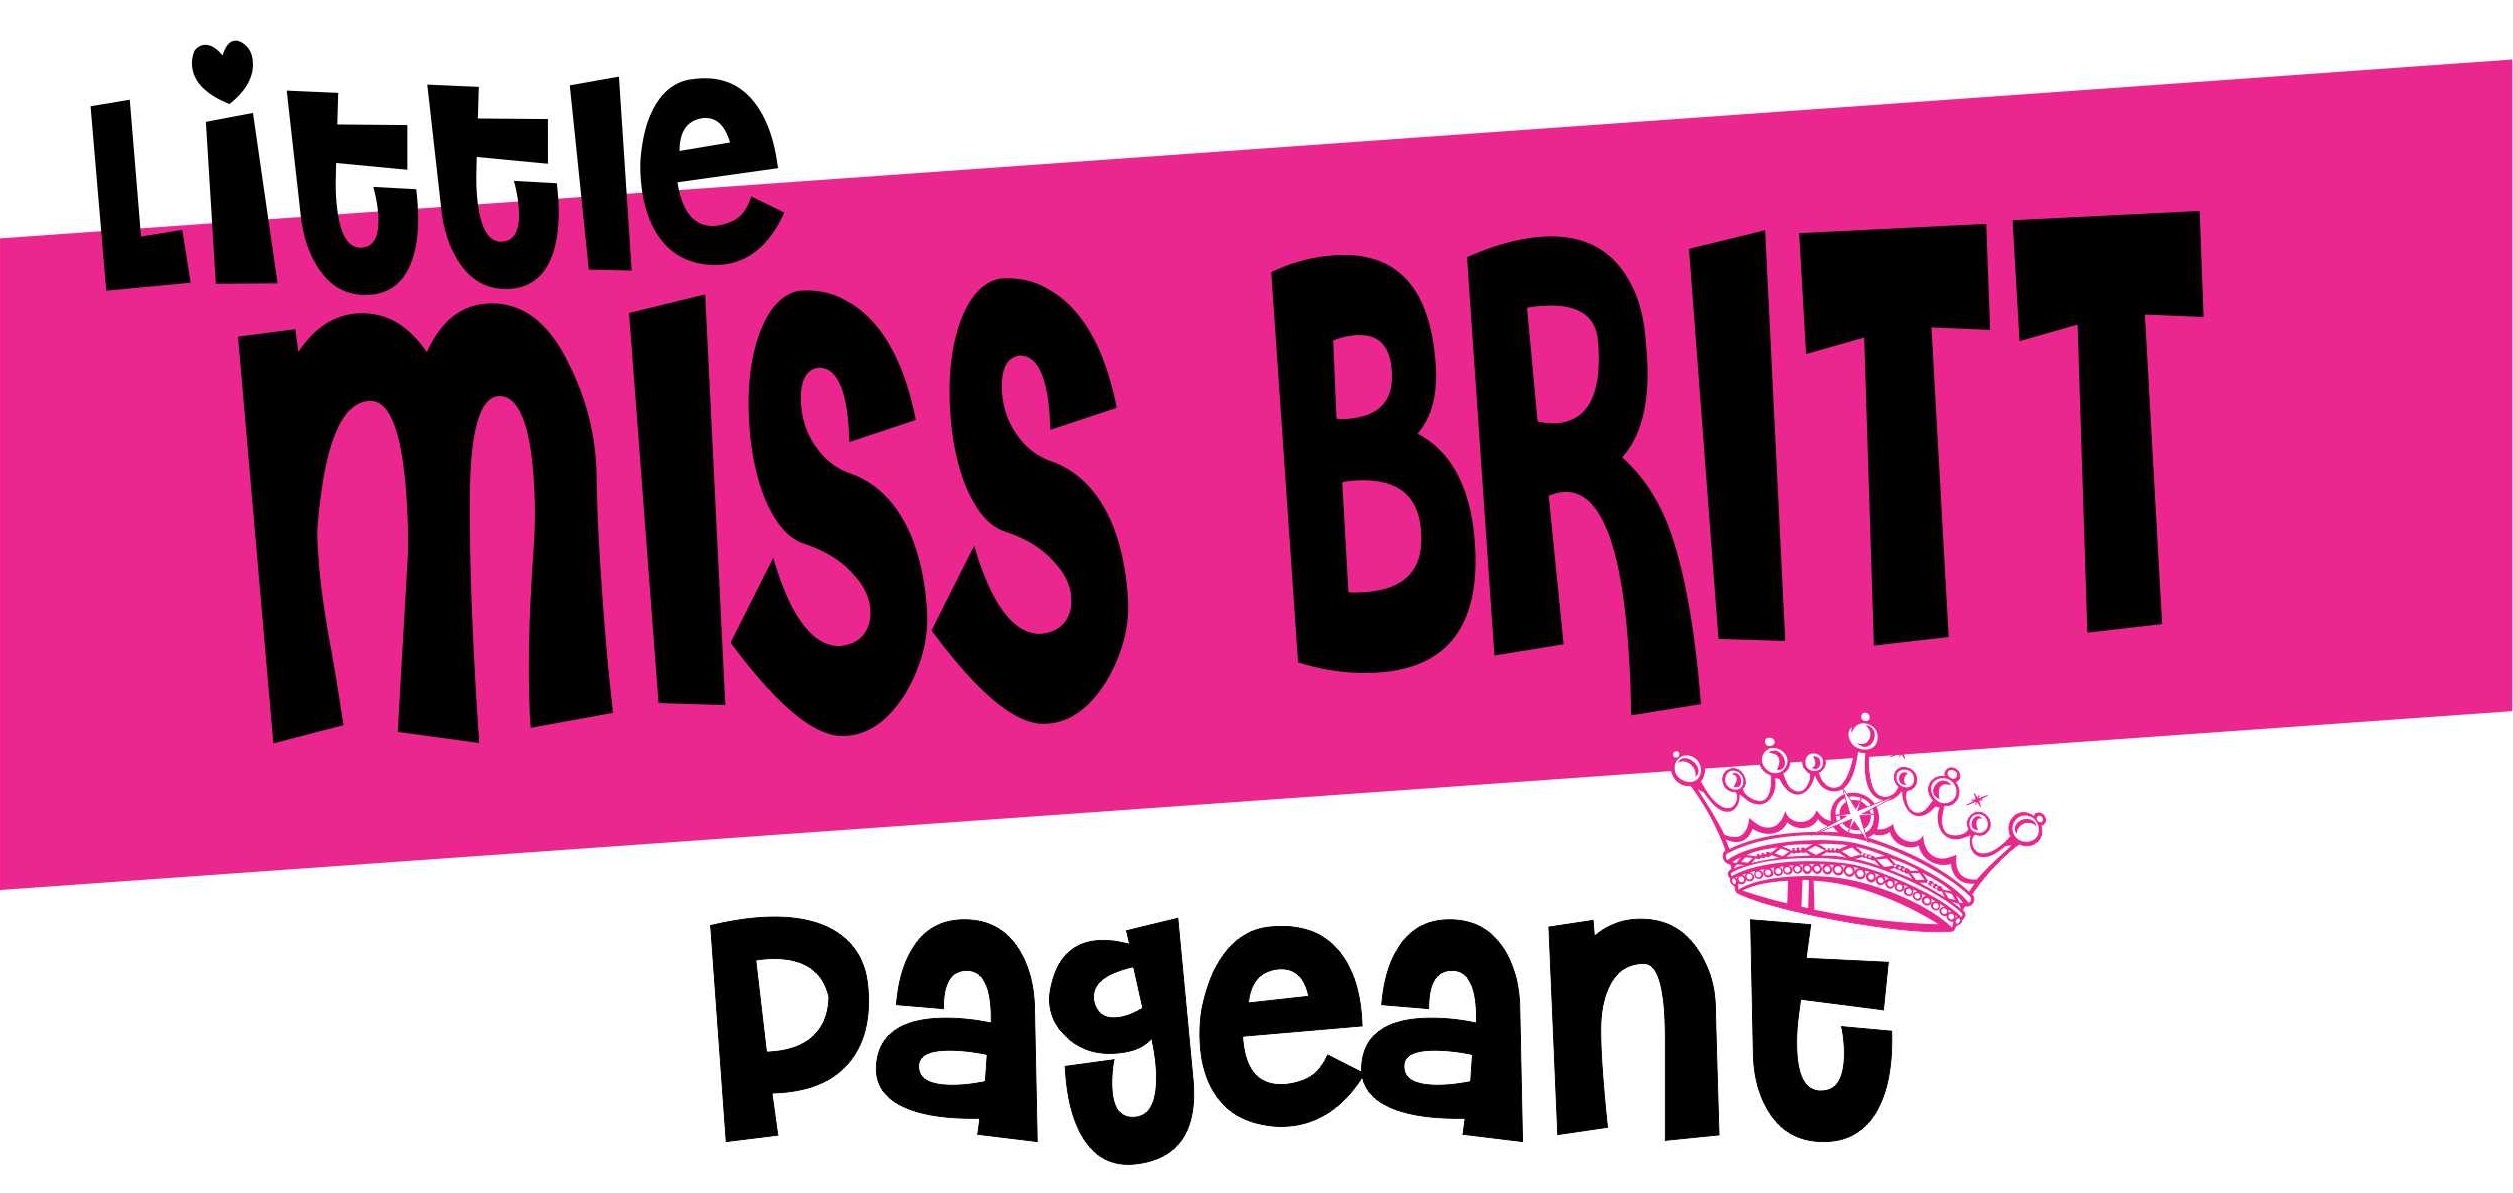 Little Miss Britt Pageant - Live Video